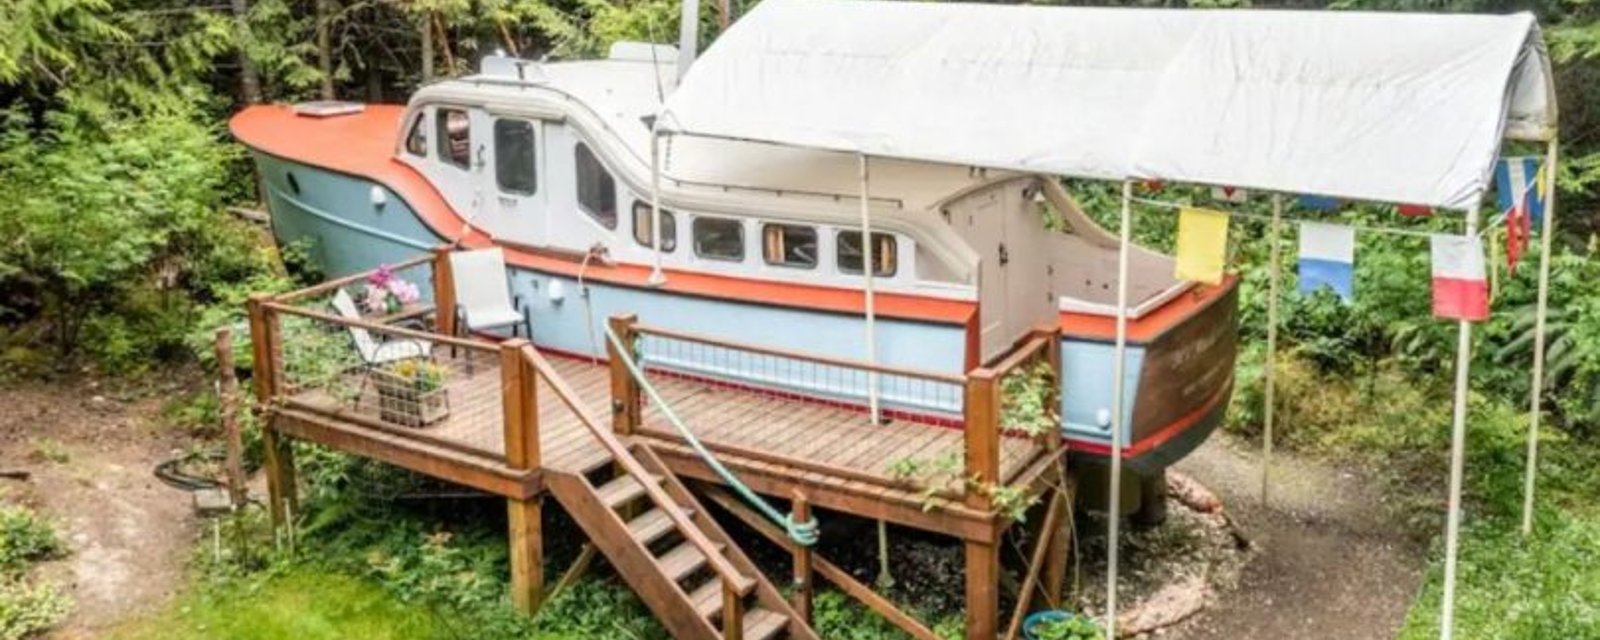 Ce vieux bateau a été transformé en une charmante location sur Airbnb 